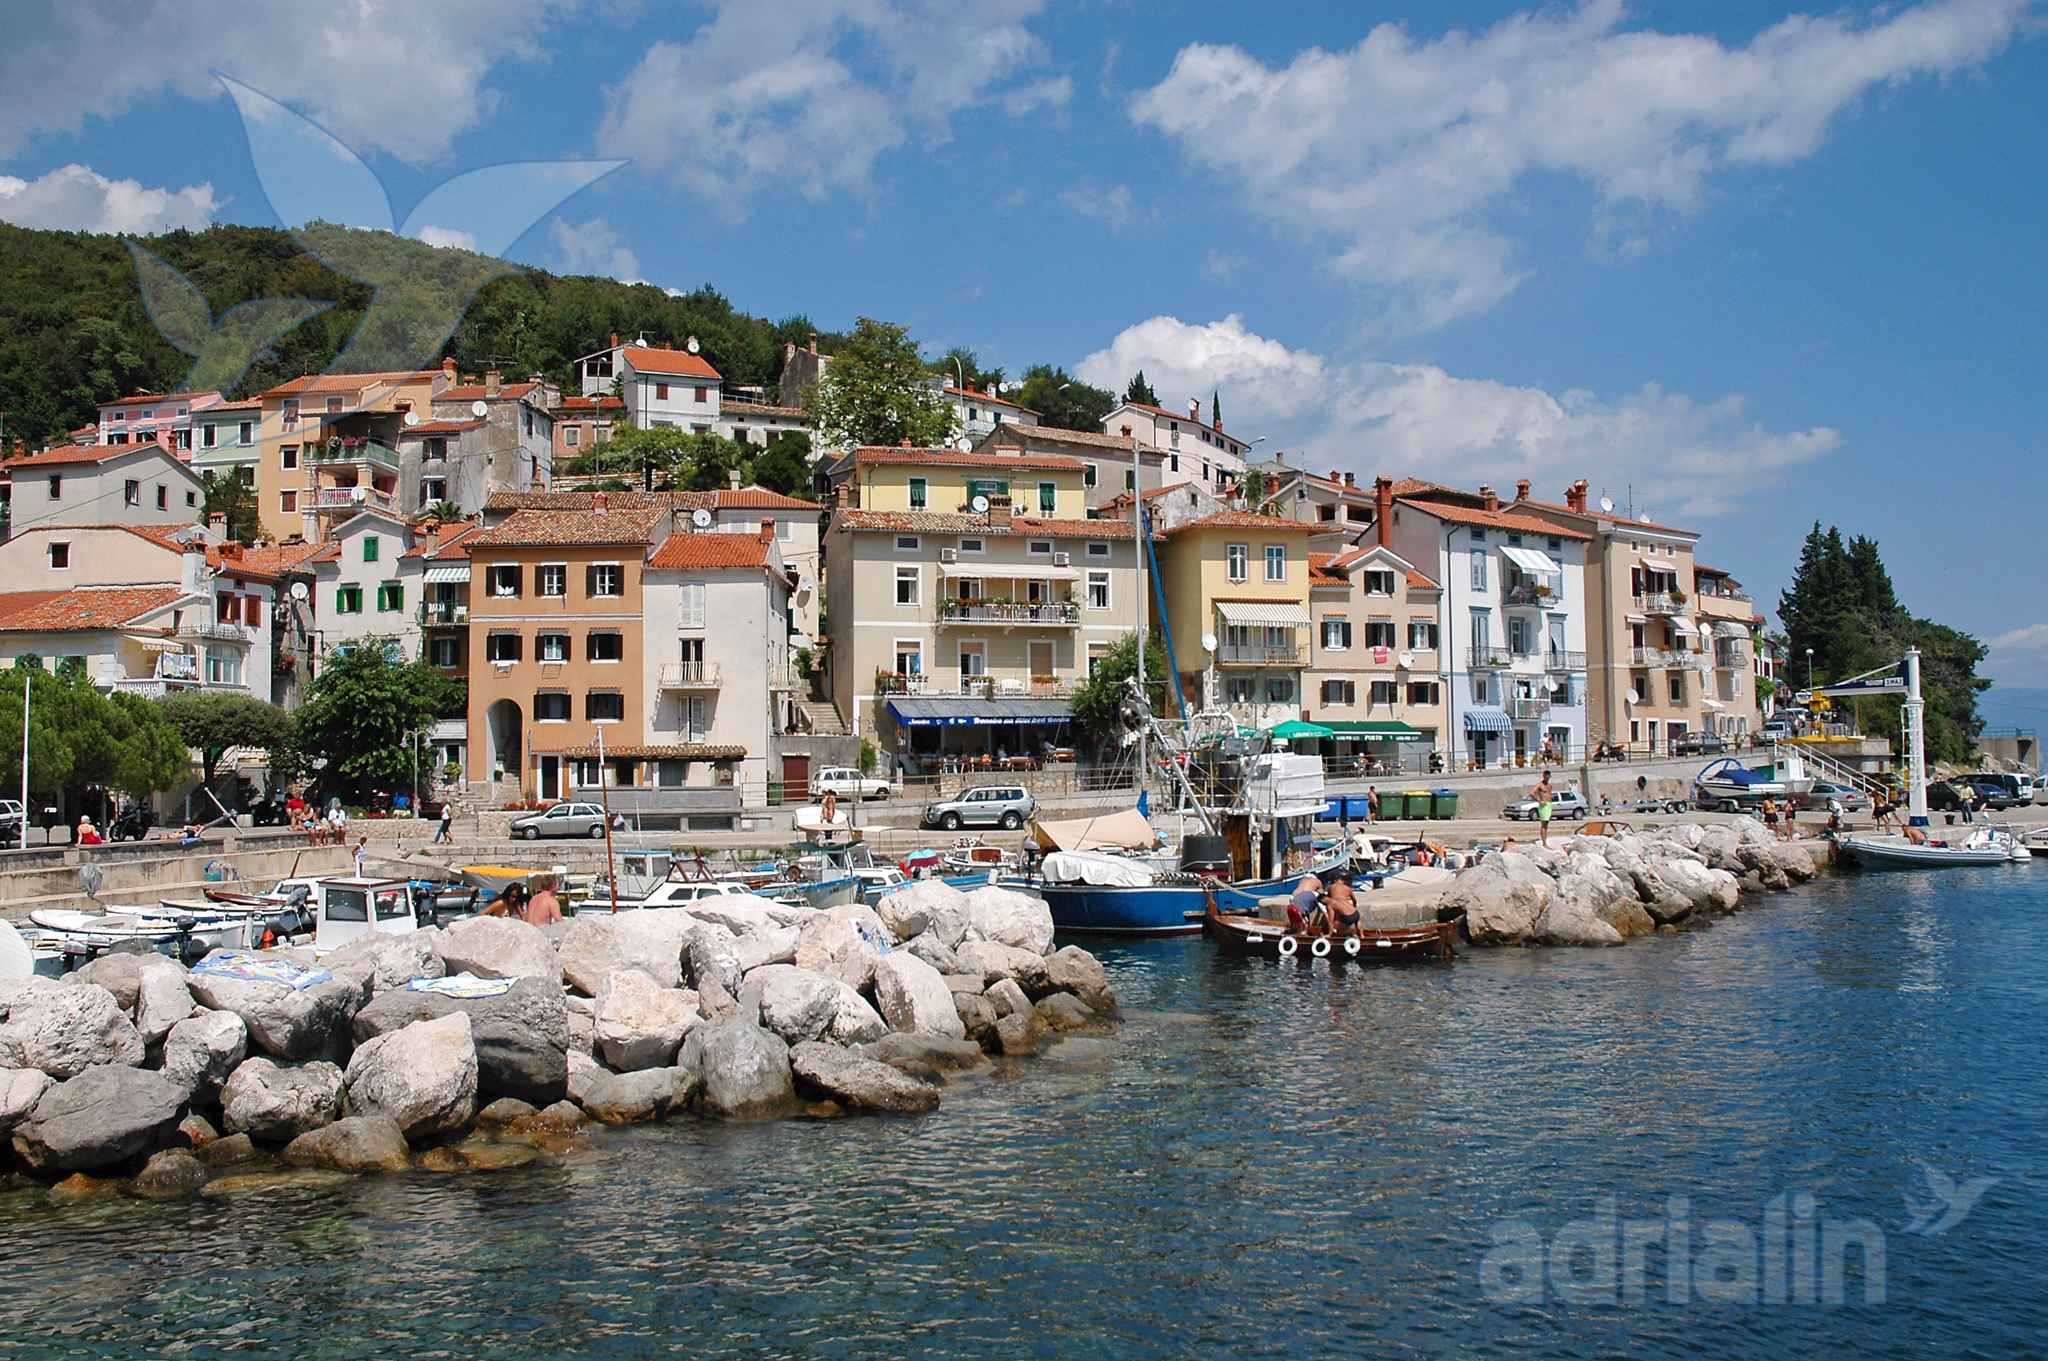 Ferienwohnung 150 m vom Meer entfernt  in Kroatien